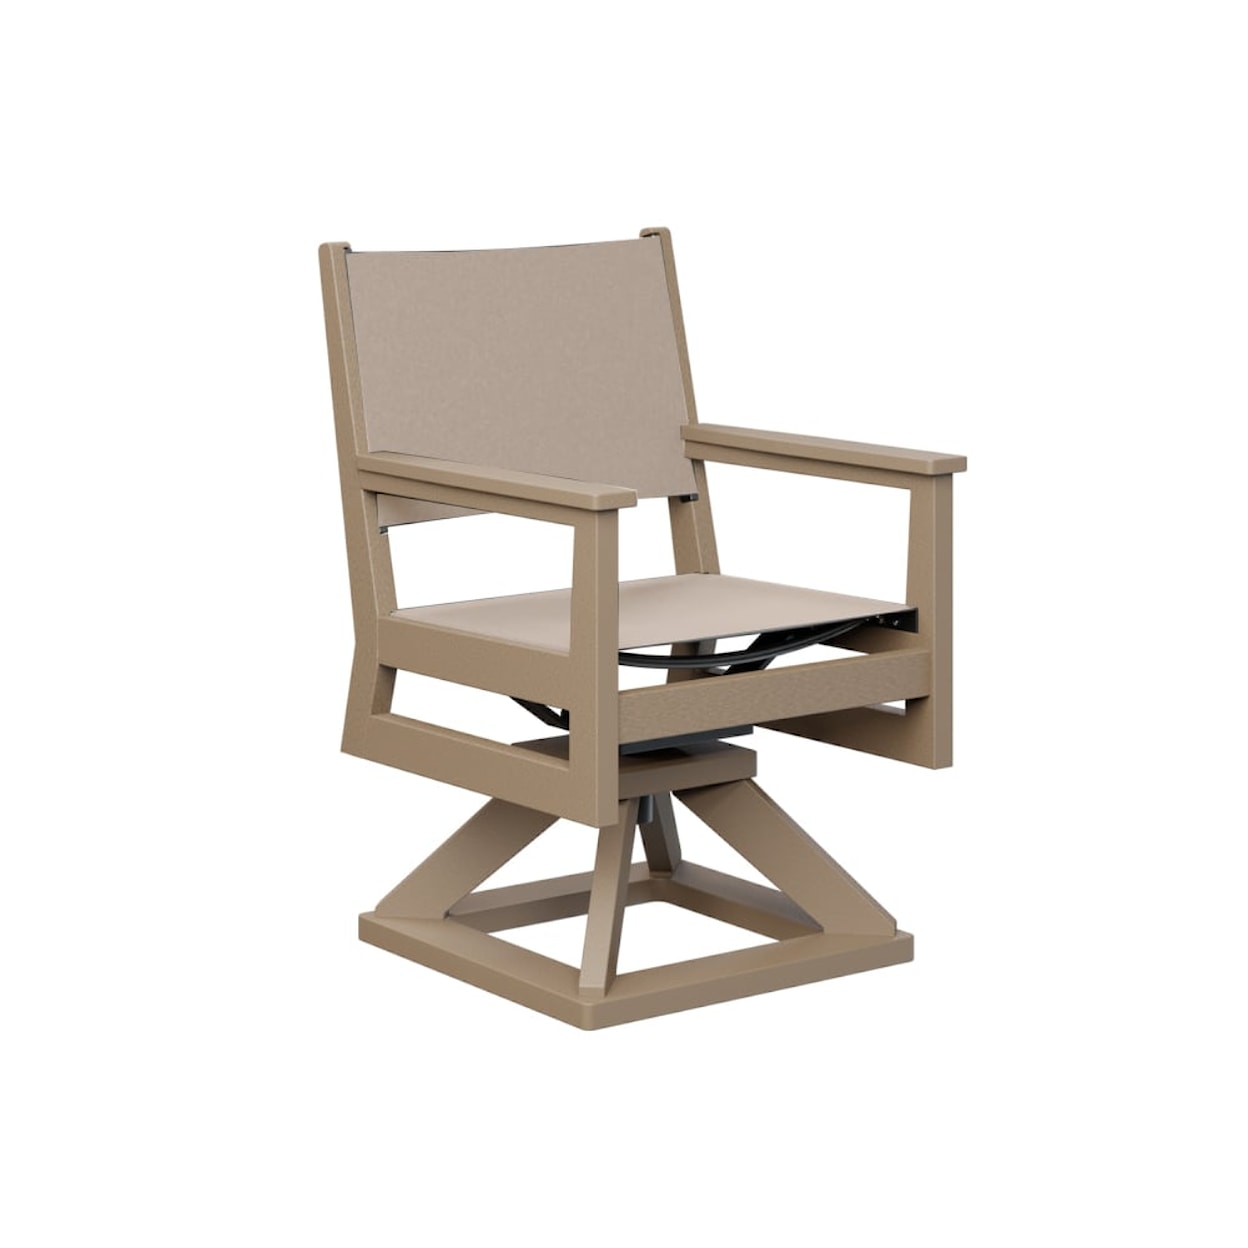 Berlin Gardens Mayhew Sling Swivel Rocker Outdoor Dining Chair